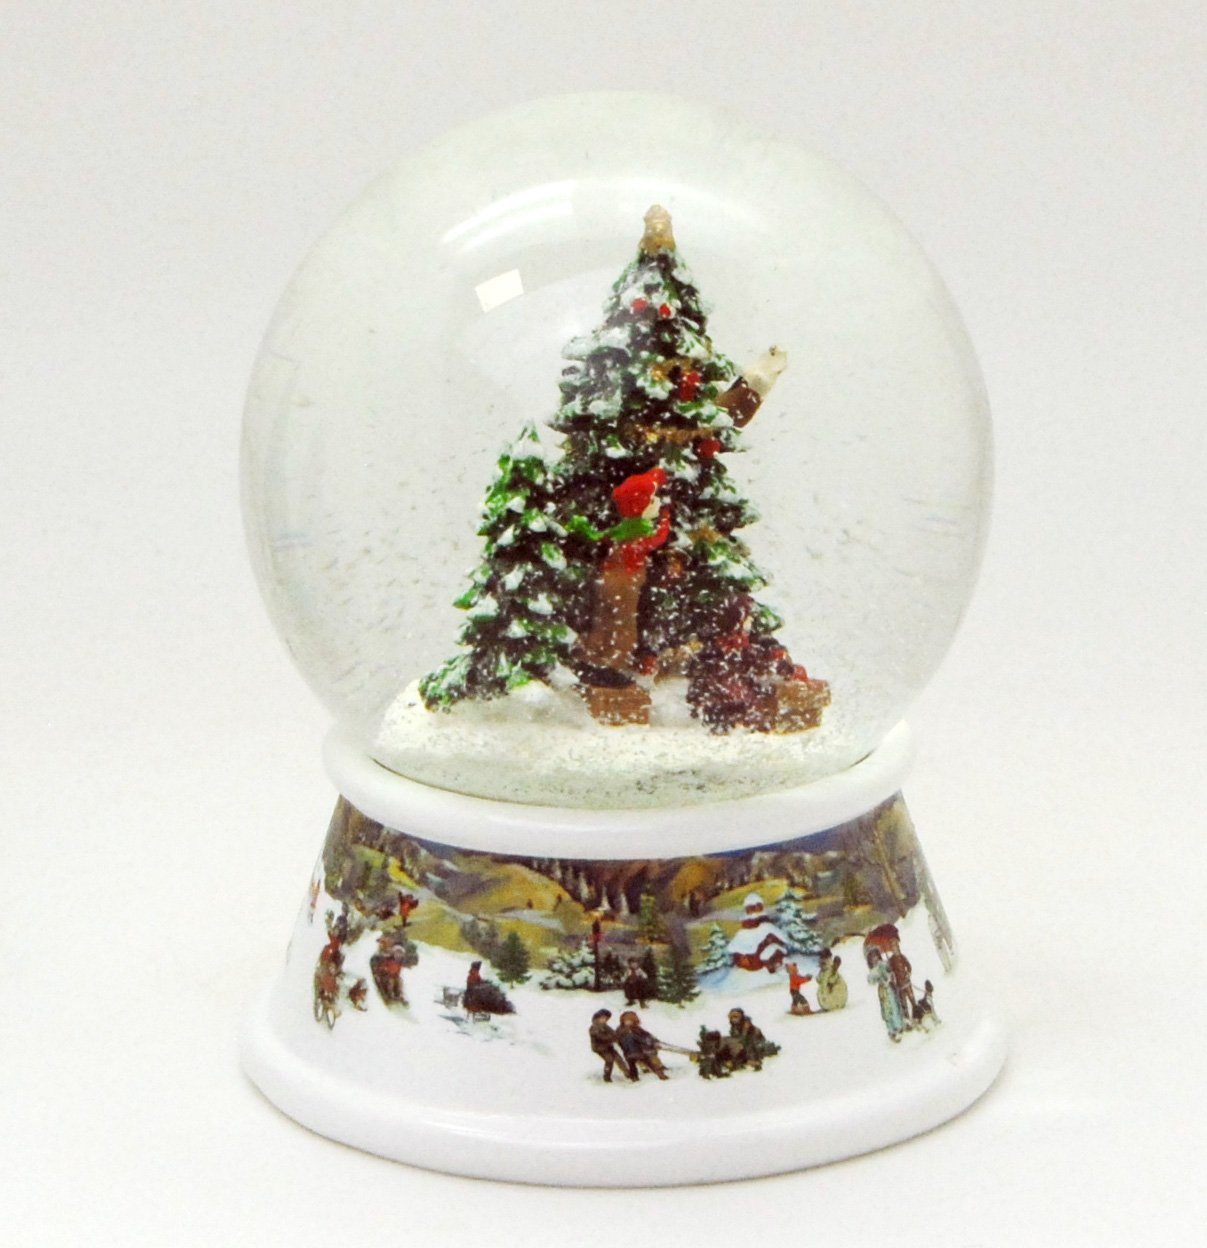 Schneelandschaft Geschenke mit 10cm Weihnachtsbaum Schneekugel schmücken MINIUM-Collection Spieluhr